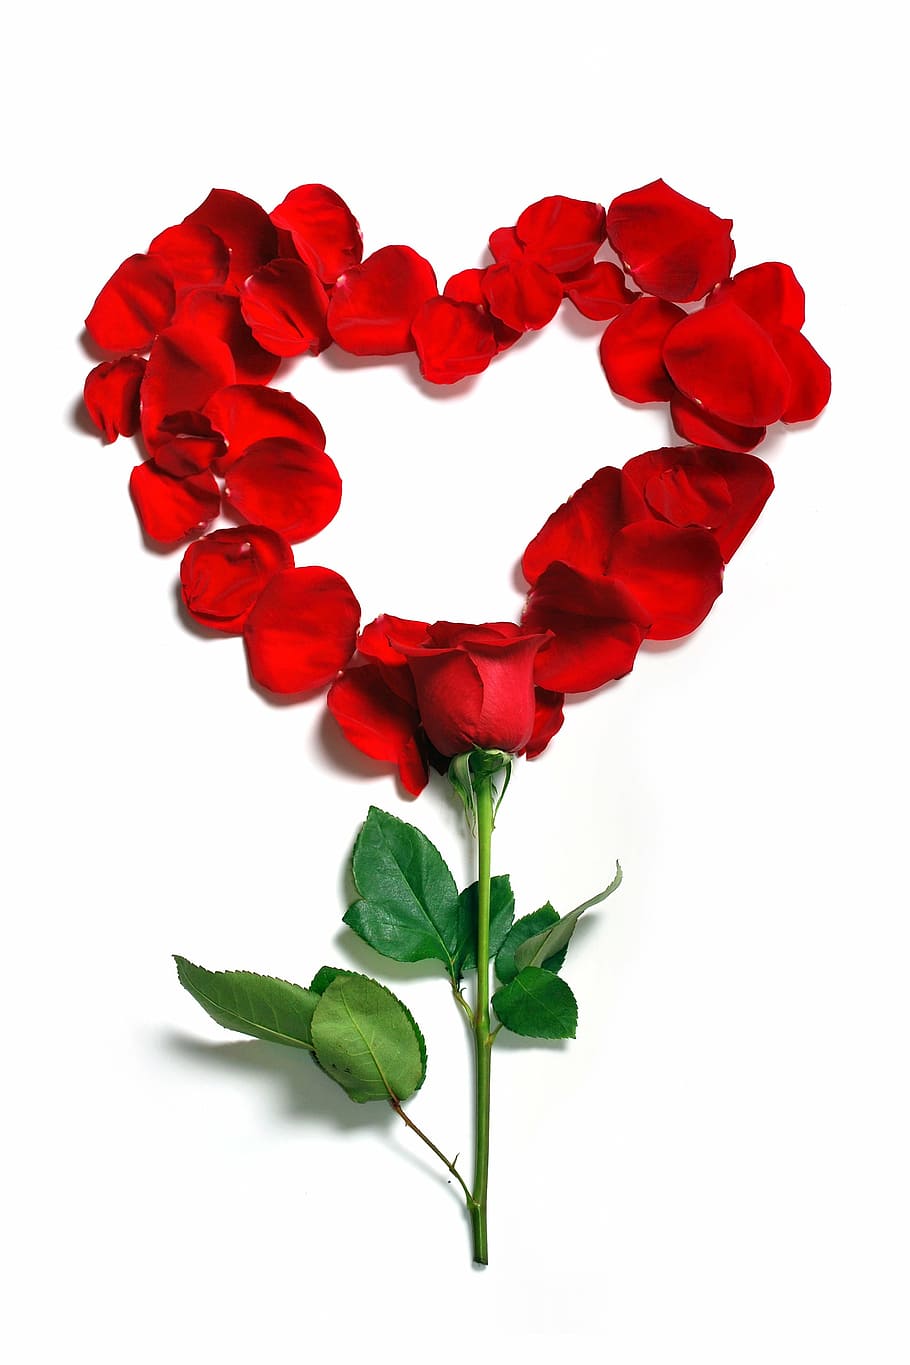 merah, mawar, dekorasi bentuk hati, kelopak, bunga, indah, mekar, alam, bunga musim panas, musim panas